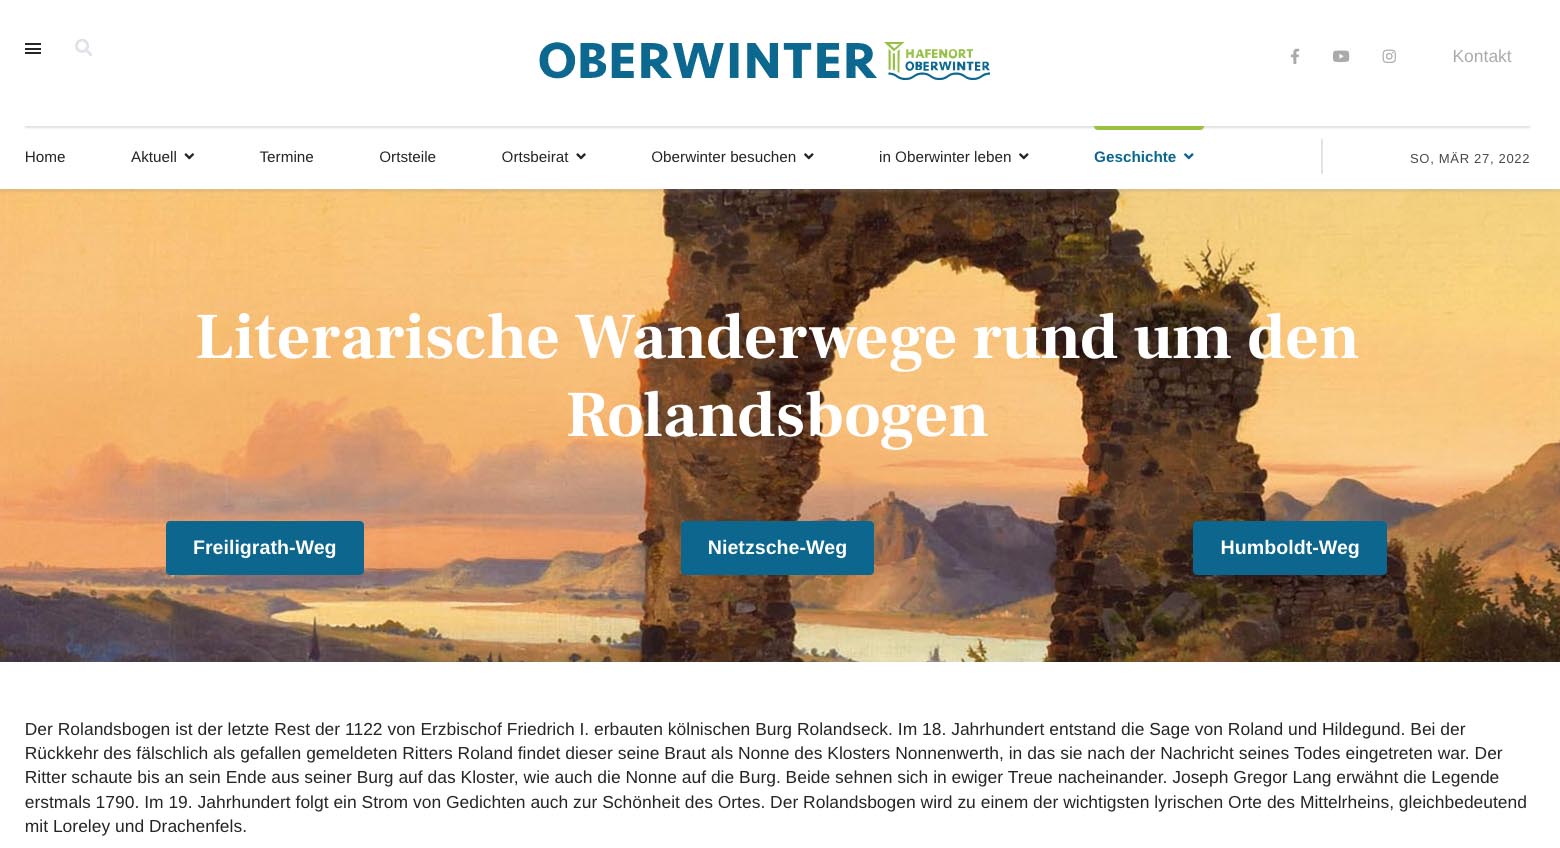 Die Webseite zu den literarischen Wanderwegen in Oberwinter.